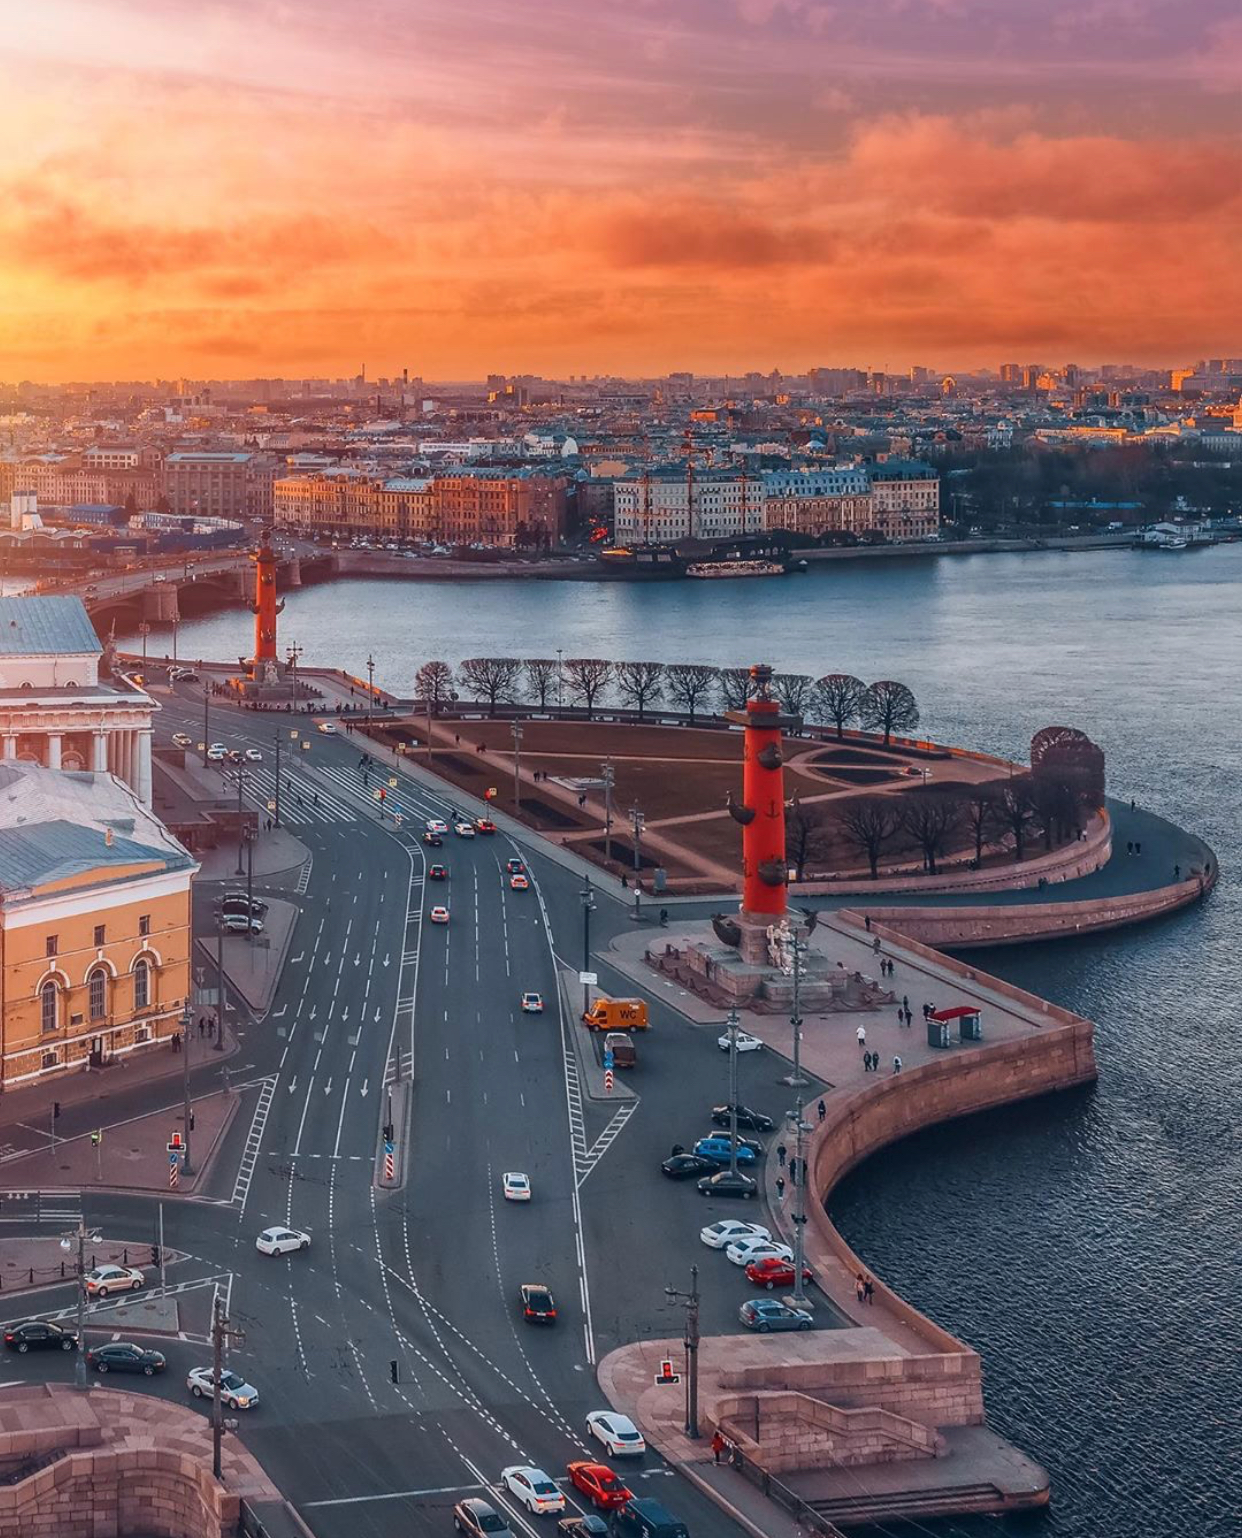 Ленинградский экспресс санкт петербург васильевского острова